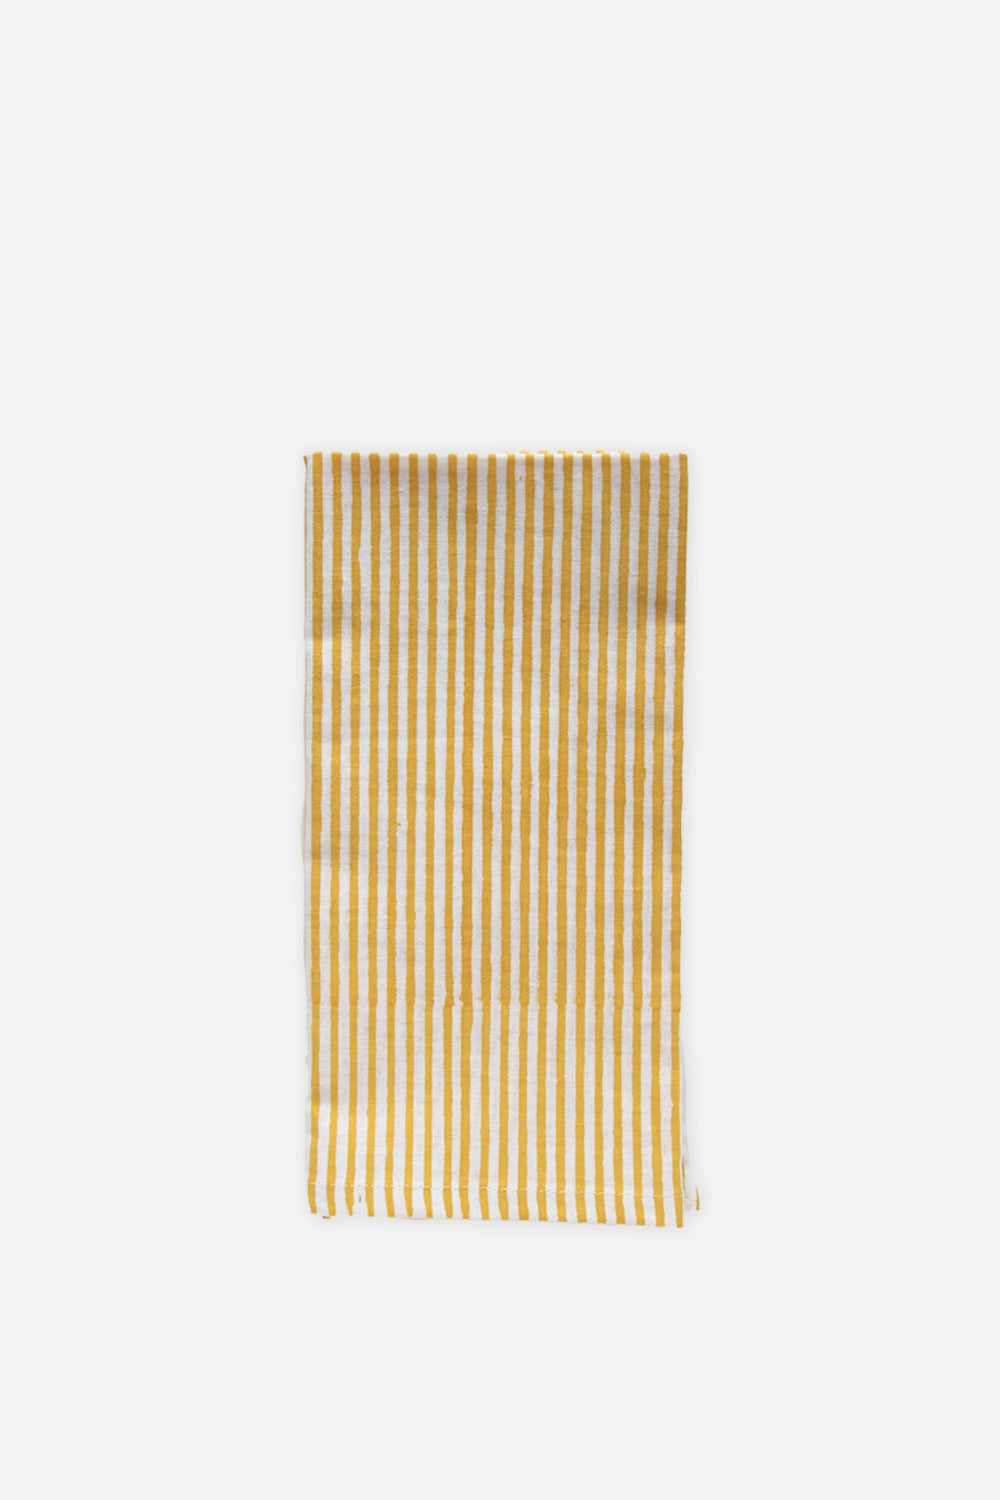 Striped Napkin / Yellow